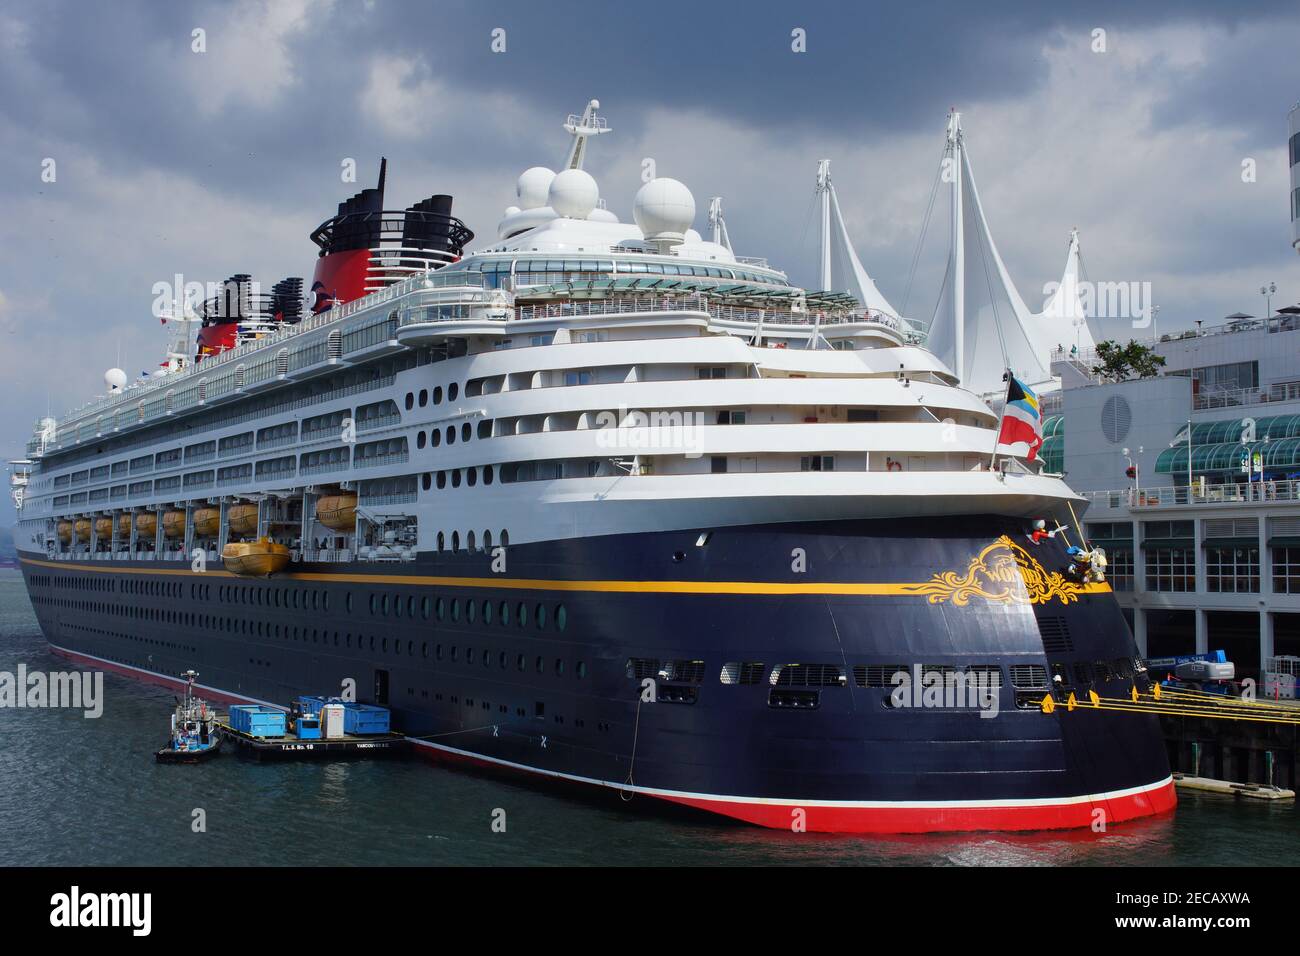 Ocean cruising with the Disney ship Stock Photo